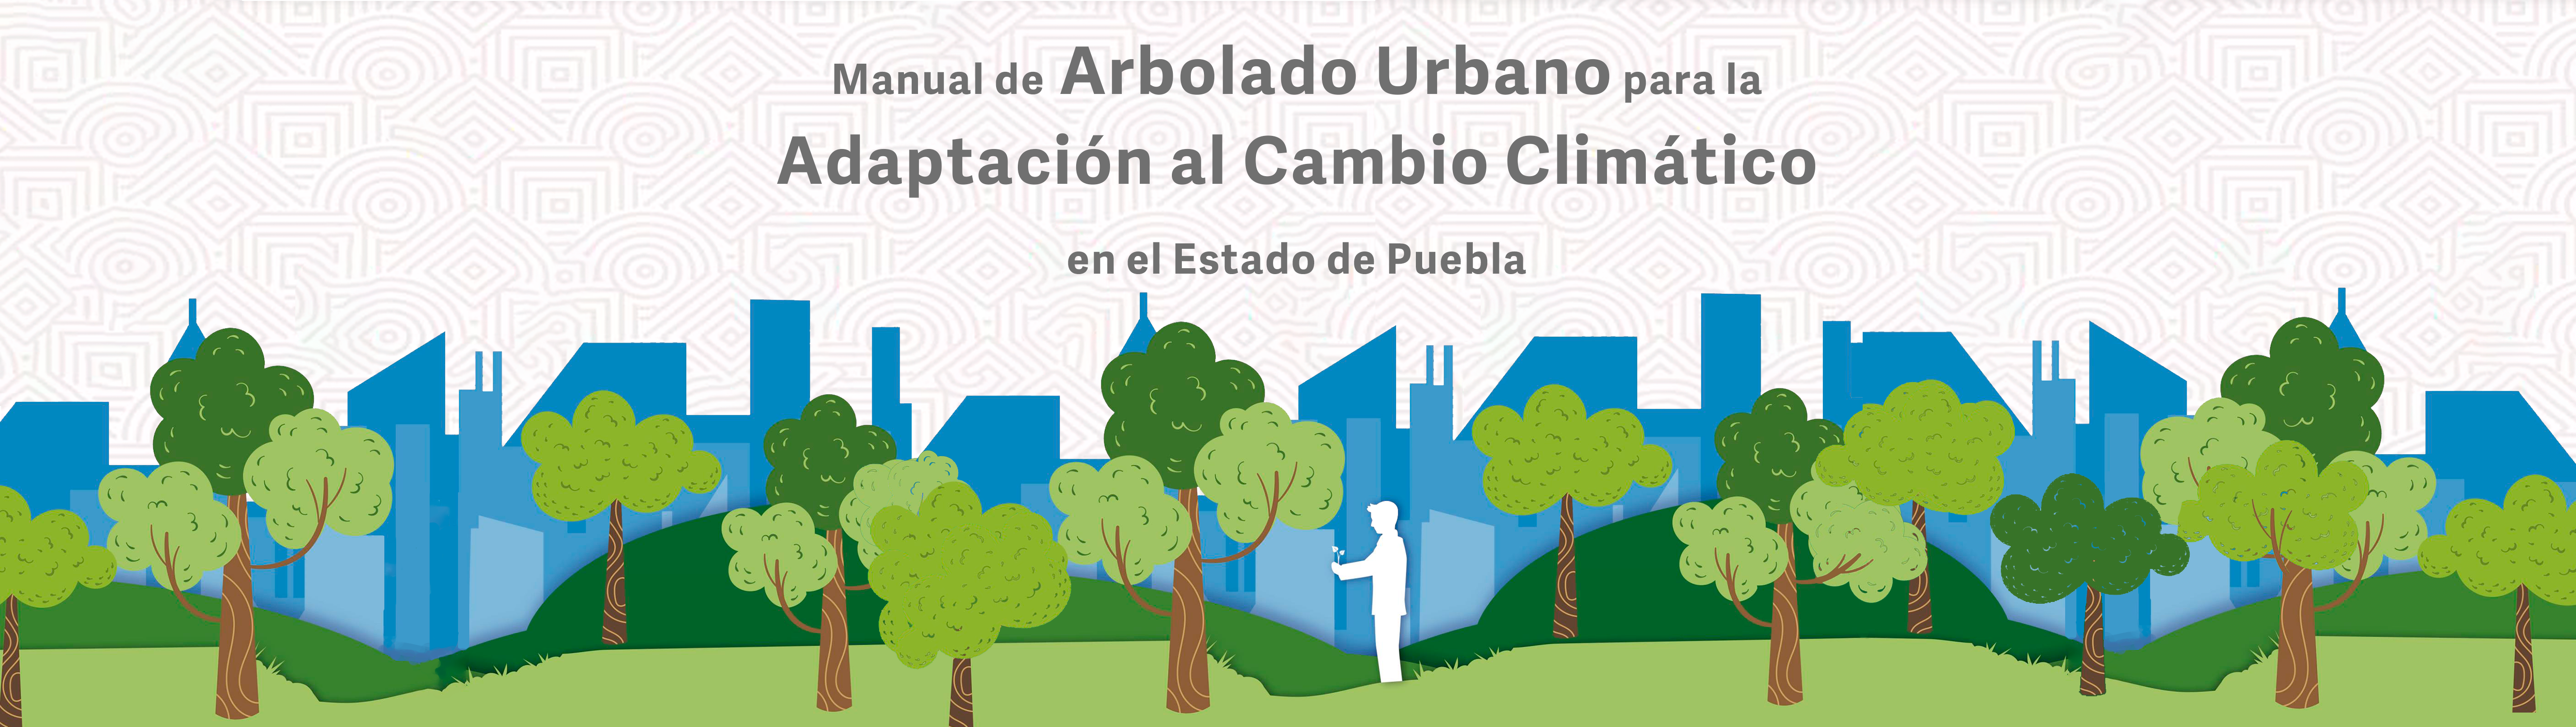 Manual de Arbolado Urbano para la Adaptación al Cambio Climático en el Estado de Puebla